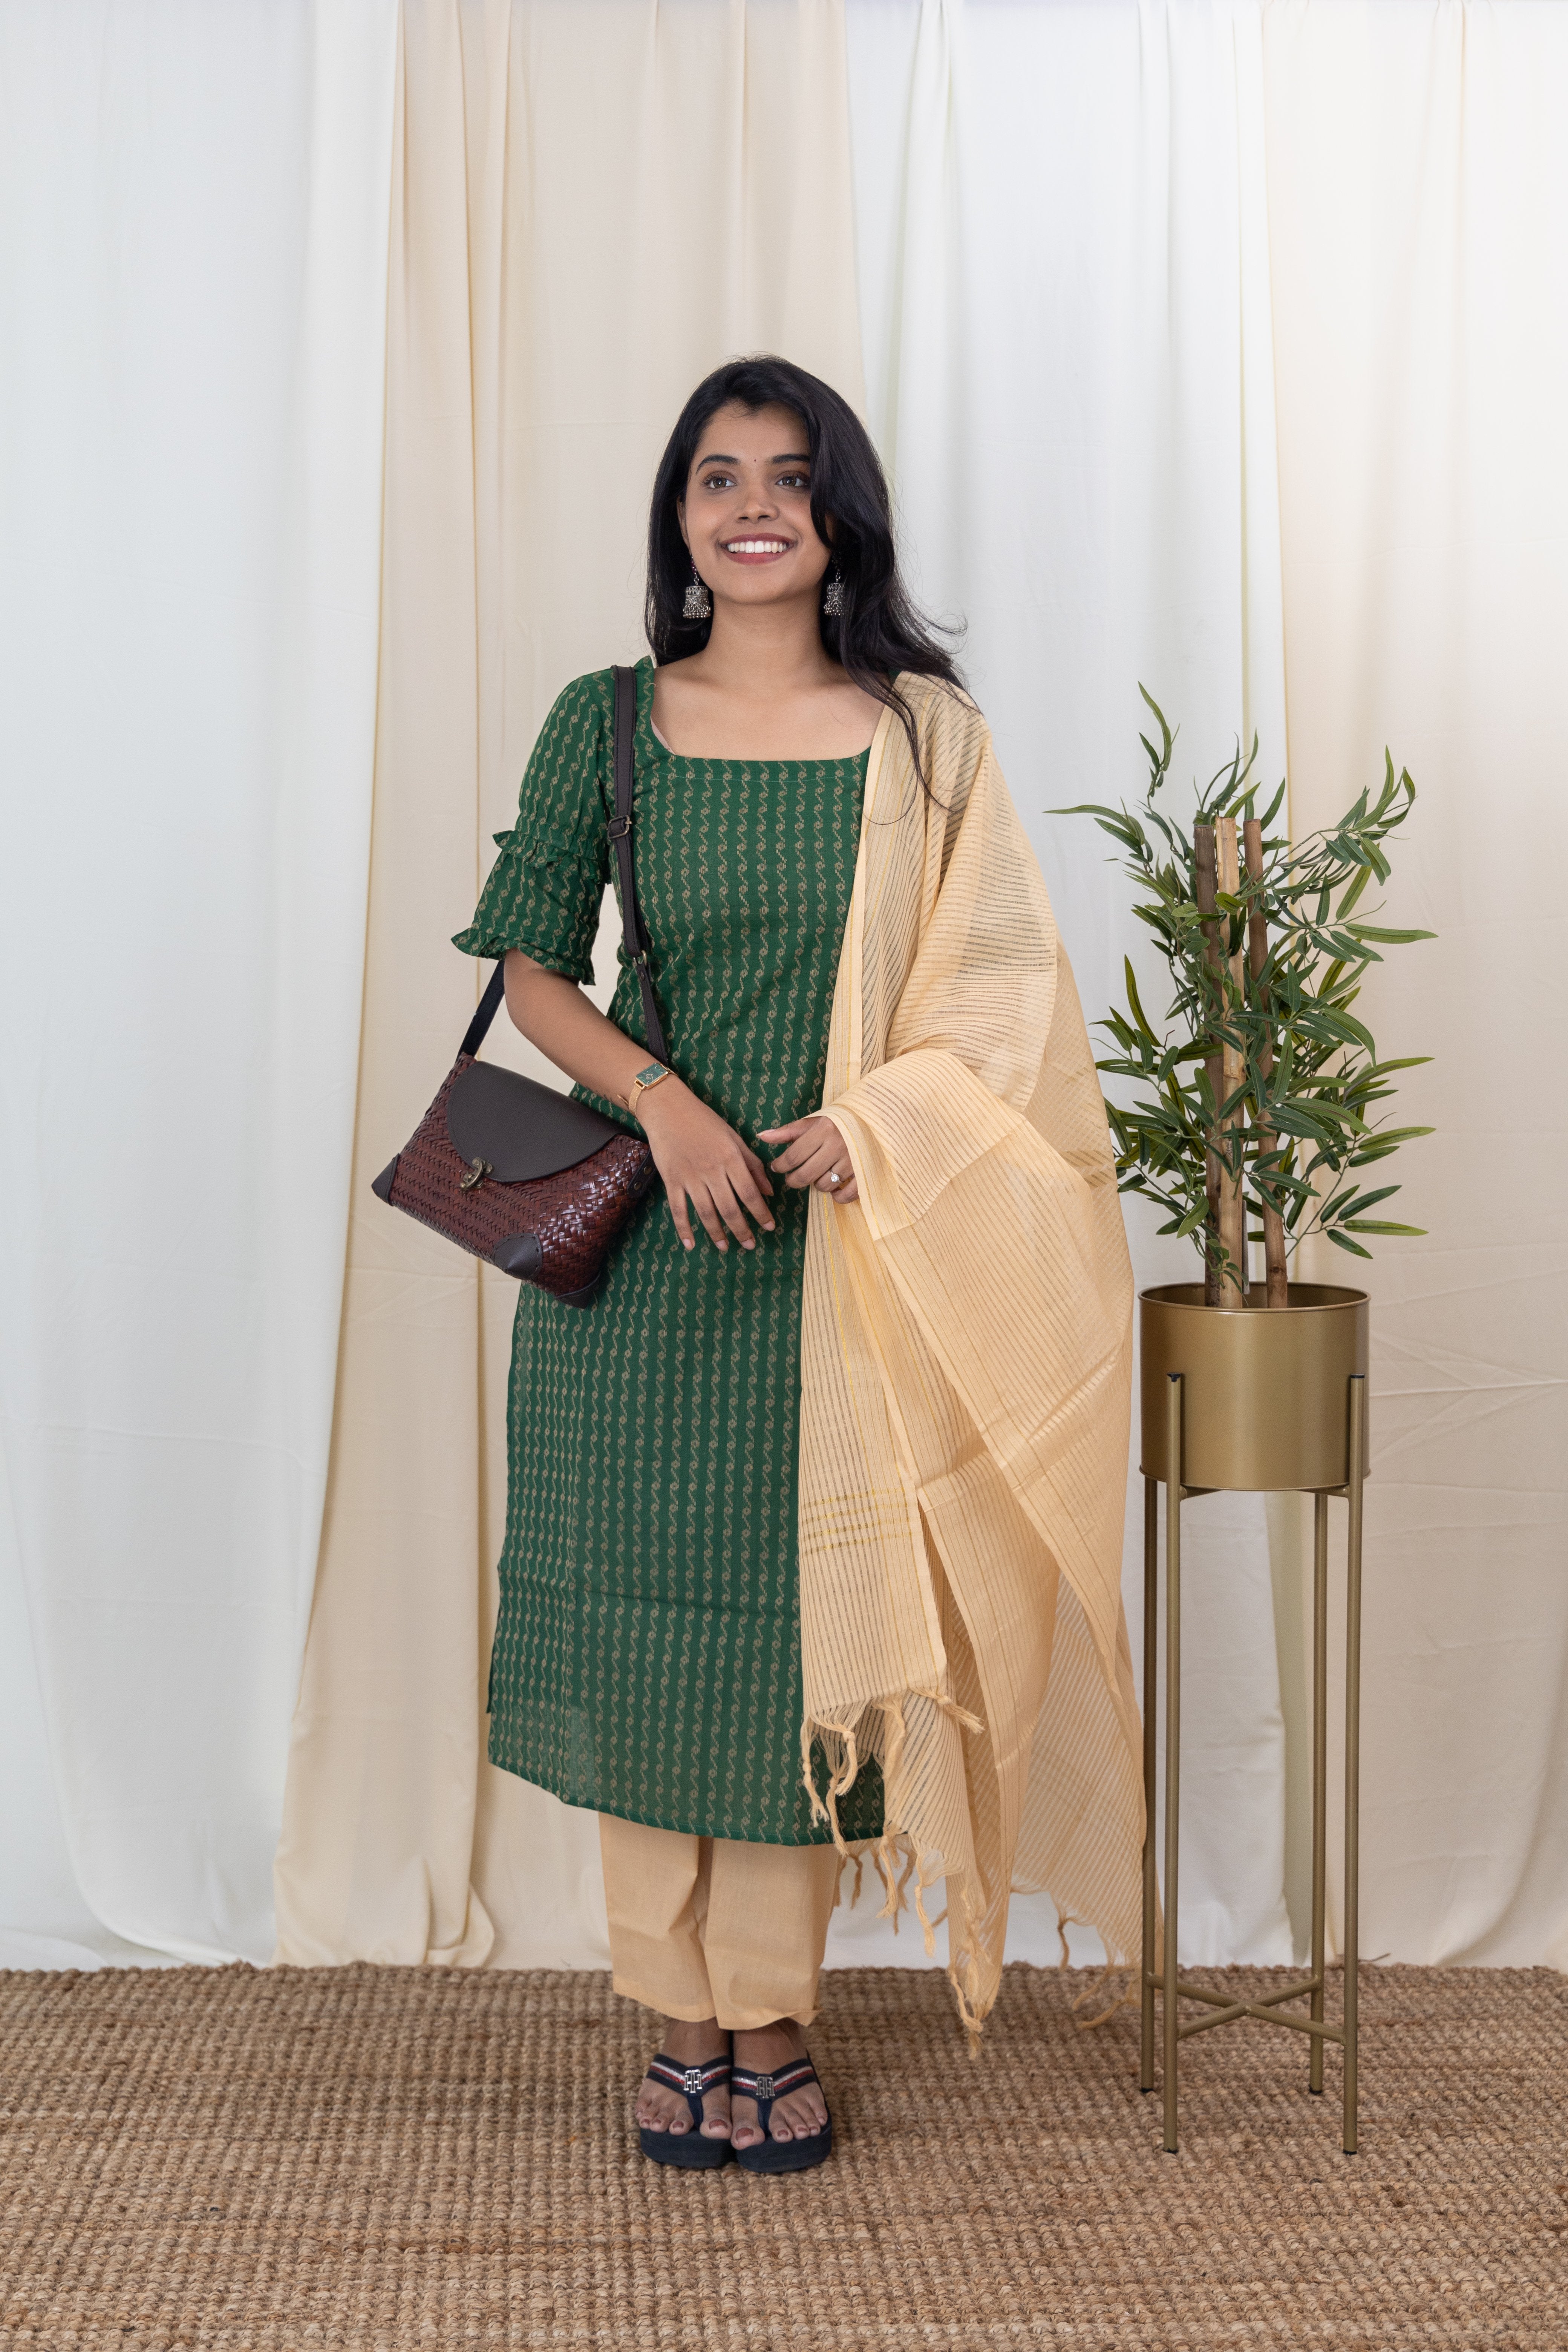 Yaazhini - Handloom cotton suit set with kota zari dupatta in dark green and cream